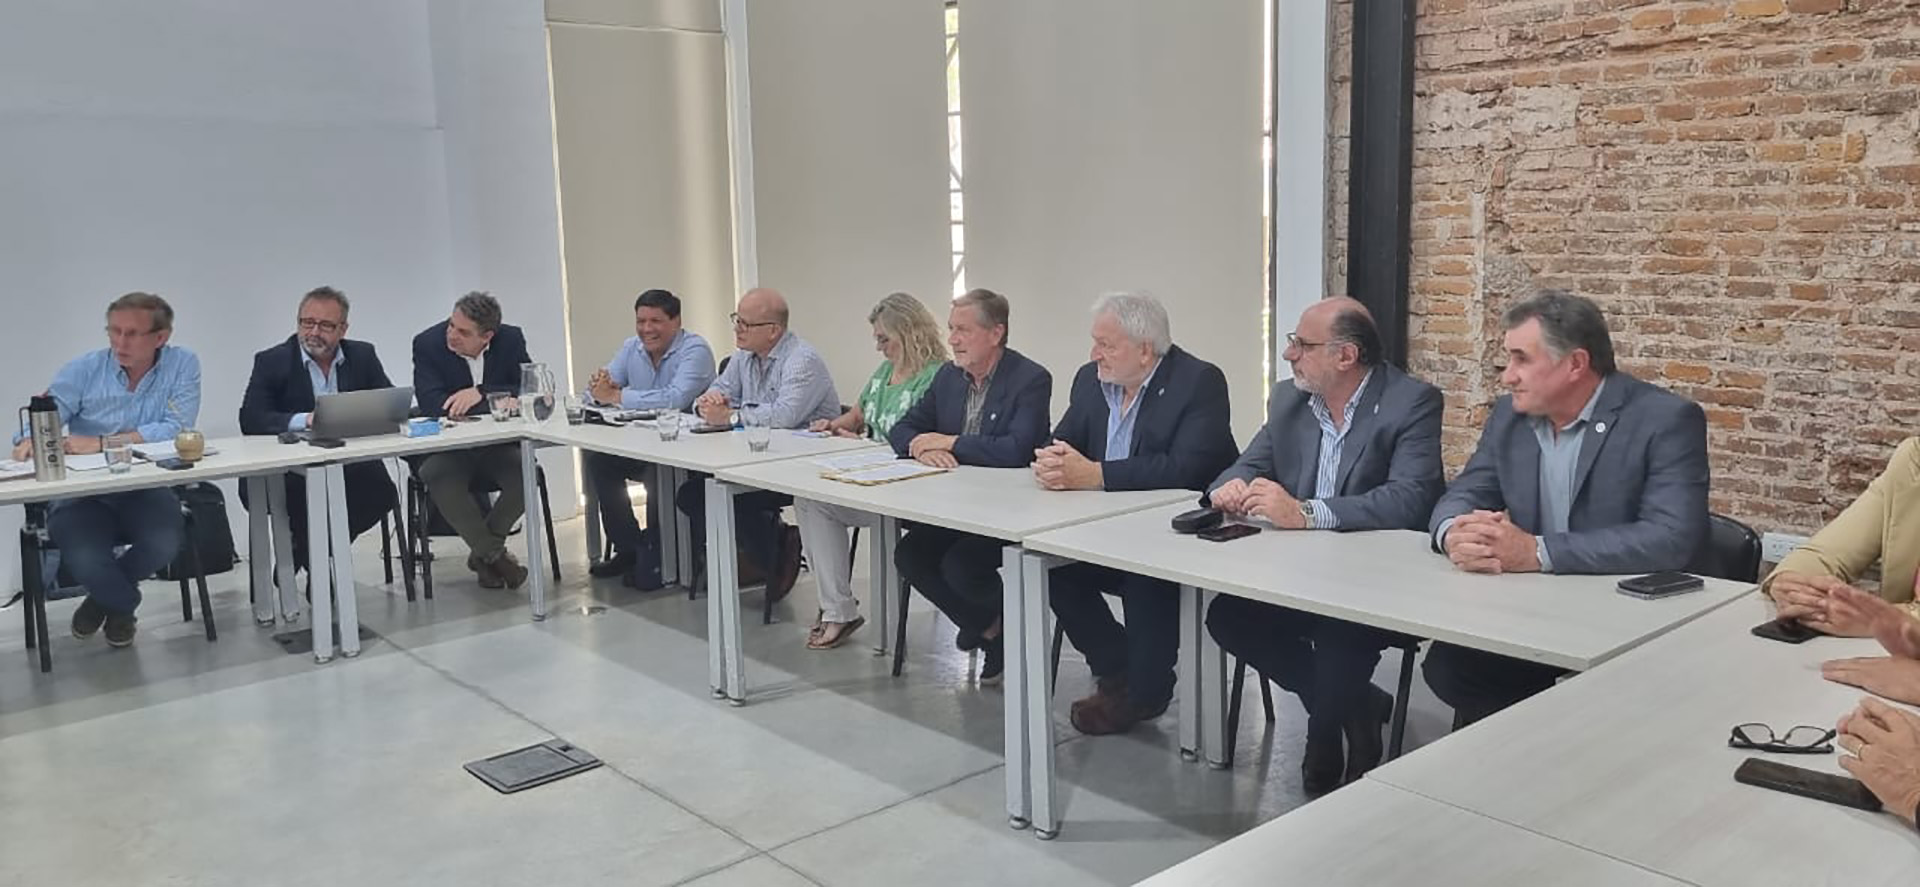 Días atrás, reunión en Rosario entre el Secretario de Agricultura y la Mesa de Enlace por el tema de la sequía 